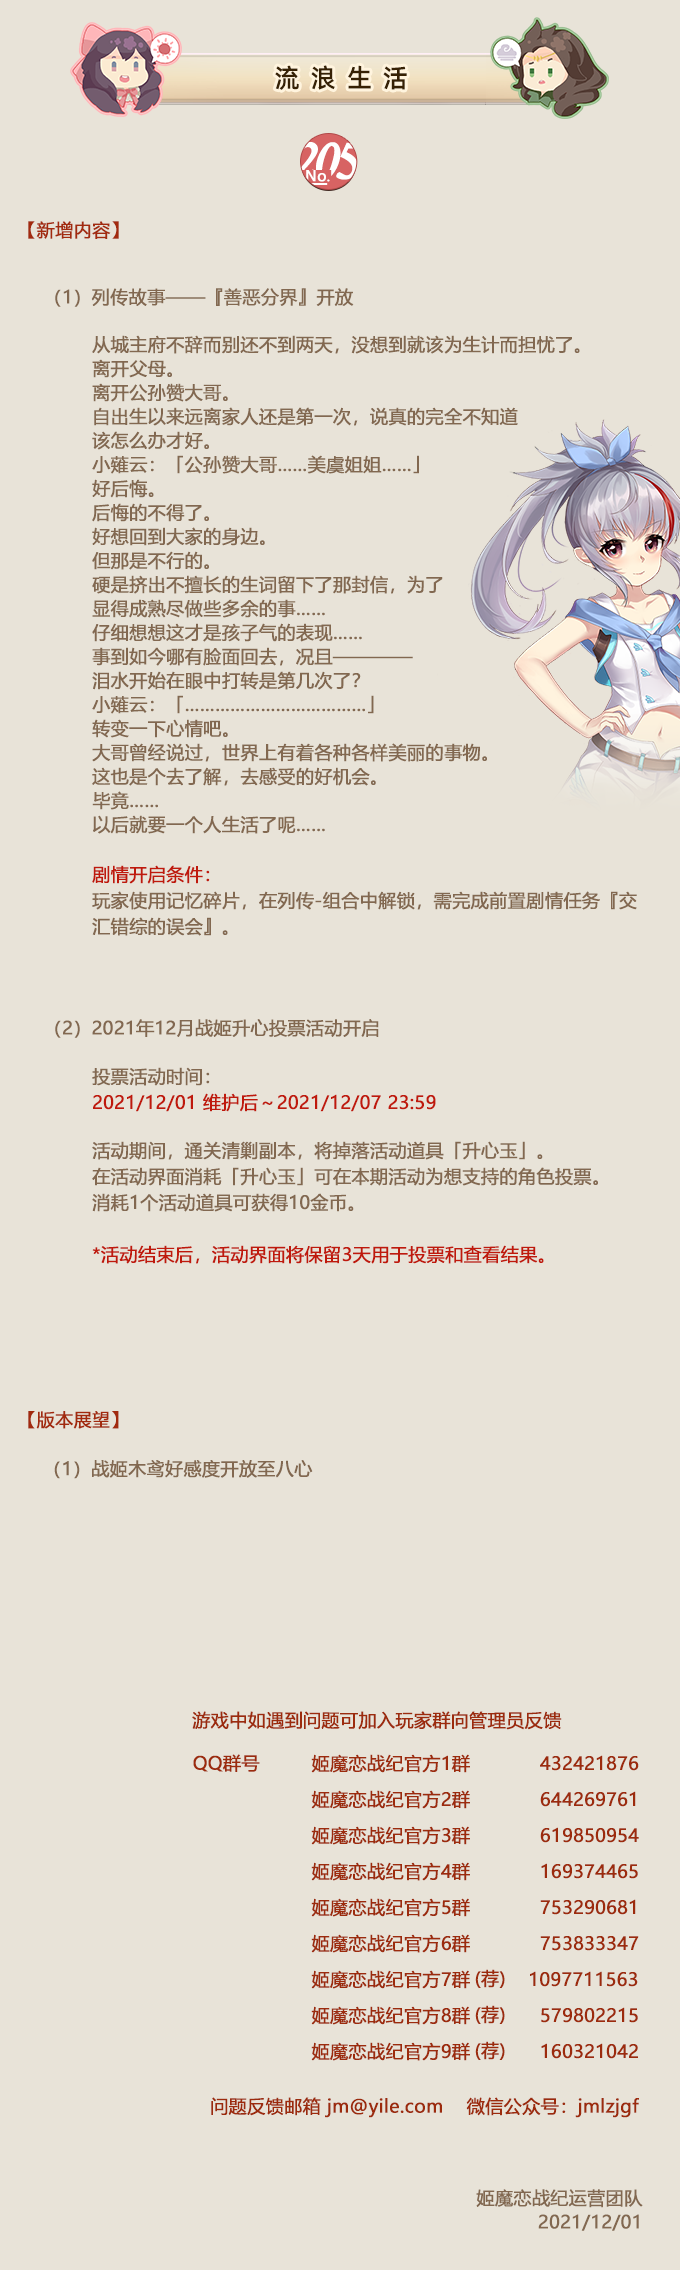 No.205 流浪生活《姬魔恋战纪》12月01日更新公告